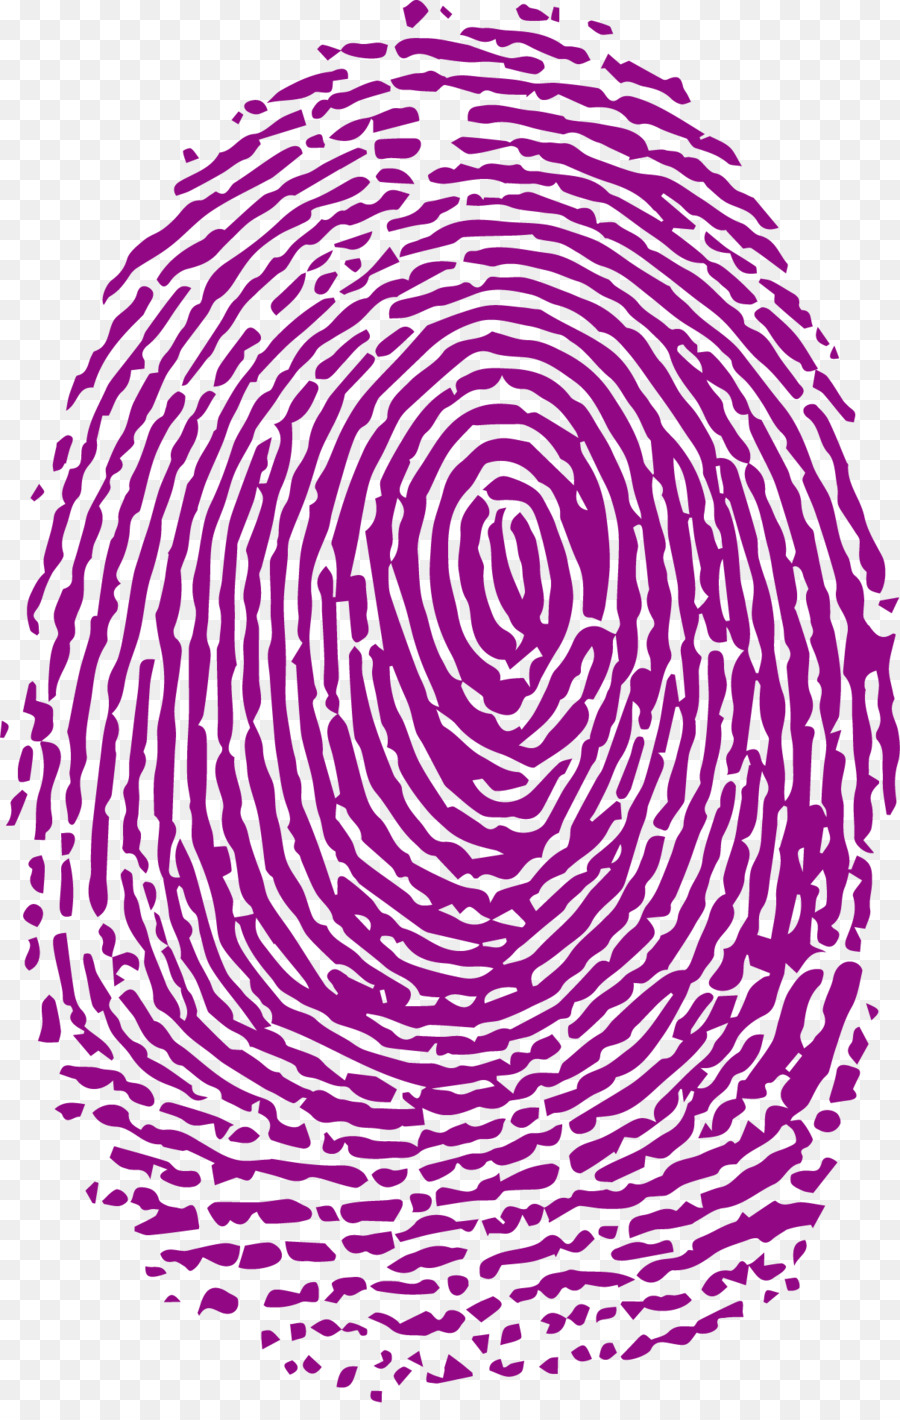 Fingerprint Forensic science Analysis - Purple fingerprints png download - 1207*1881 - Free Transparent Fingerprint png Download.